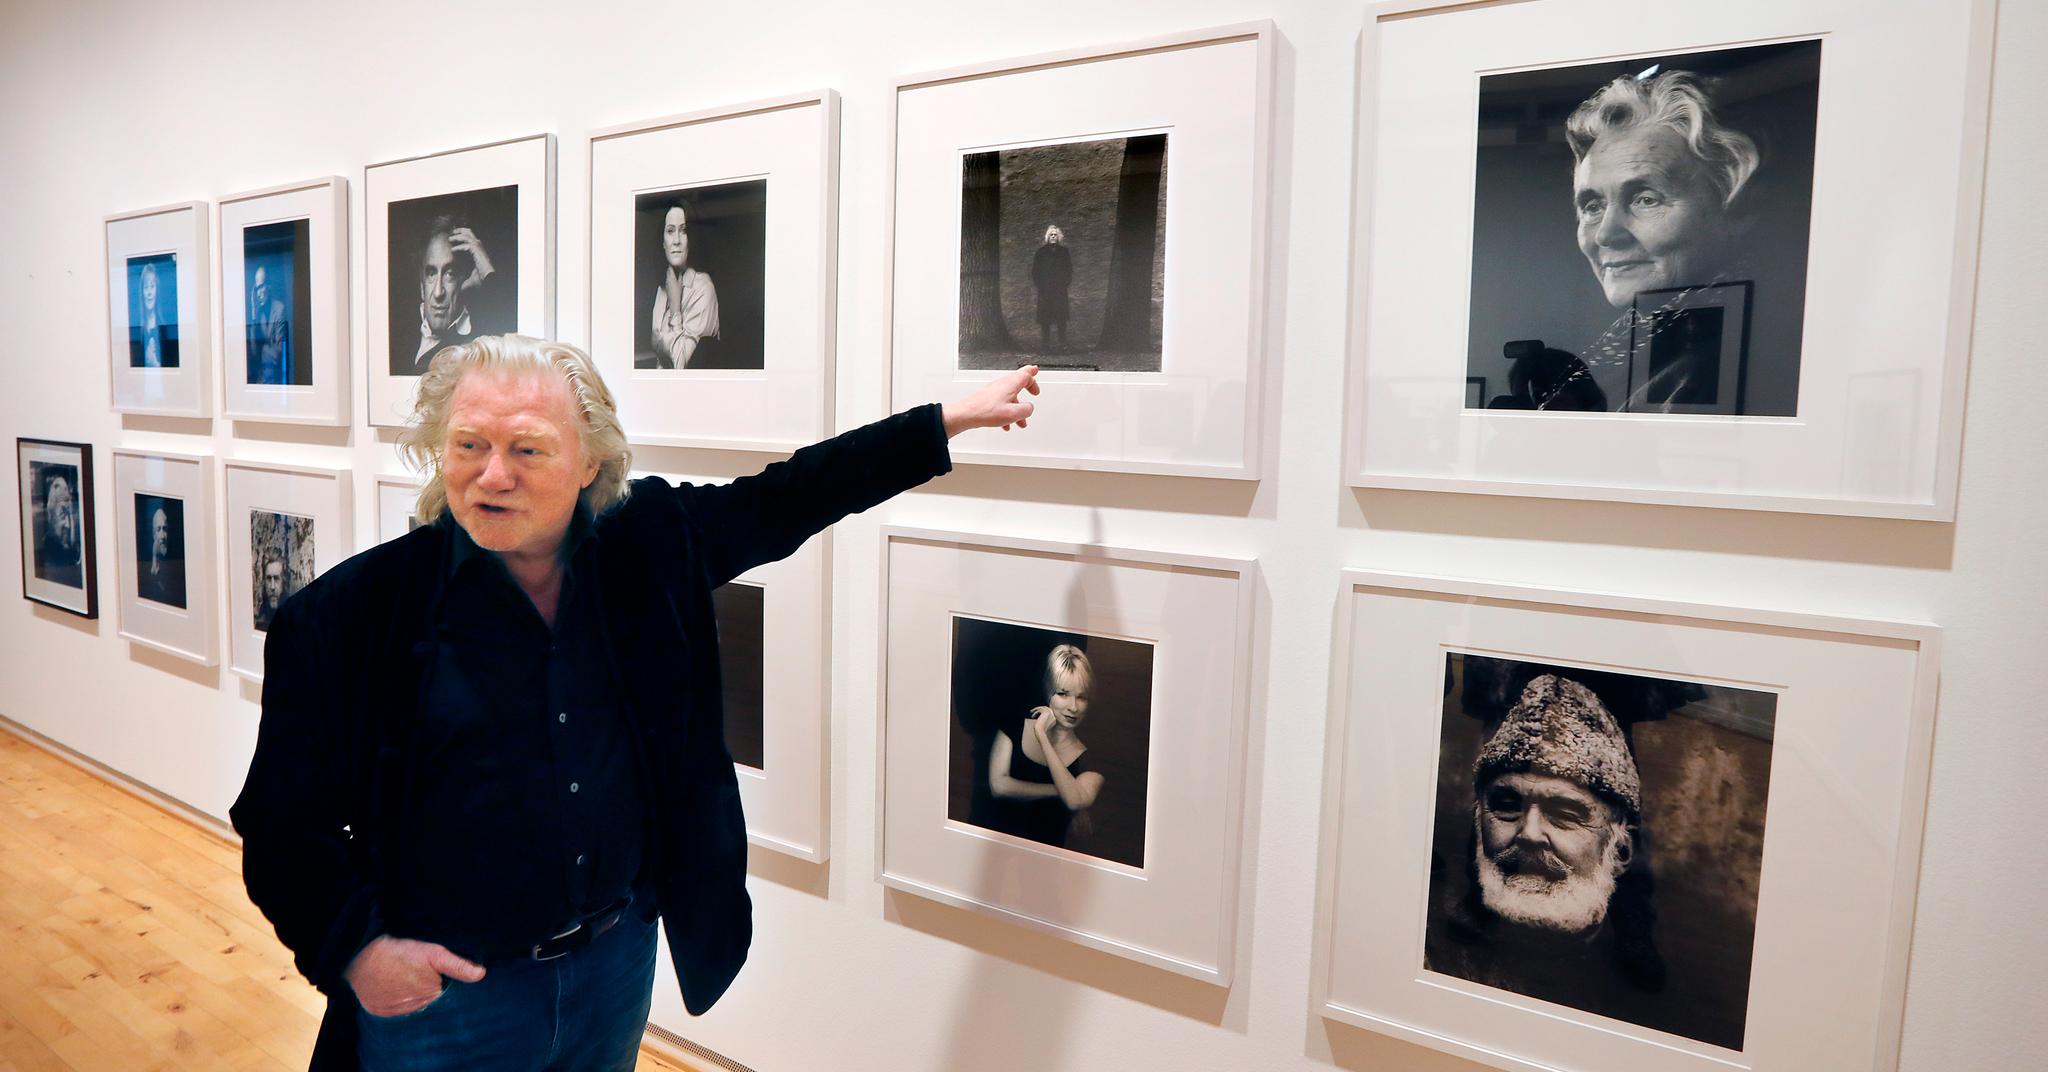 Fotokunstneren Morten Krogvold foran rekken av kjente portretter, som han nå viser i Tønsberg. Her peker han på forfatteren Dag Solstad. – Når vi snakker om forfattere og kunstnere er nemlig saken den at en kunstner lever av sin egen sårbarhet. Tvilen er sterkt til stede, sier Krogvold.